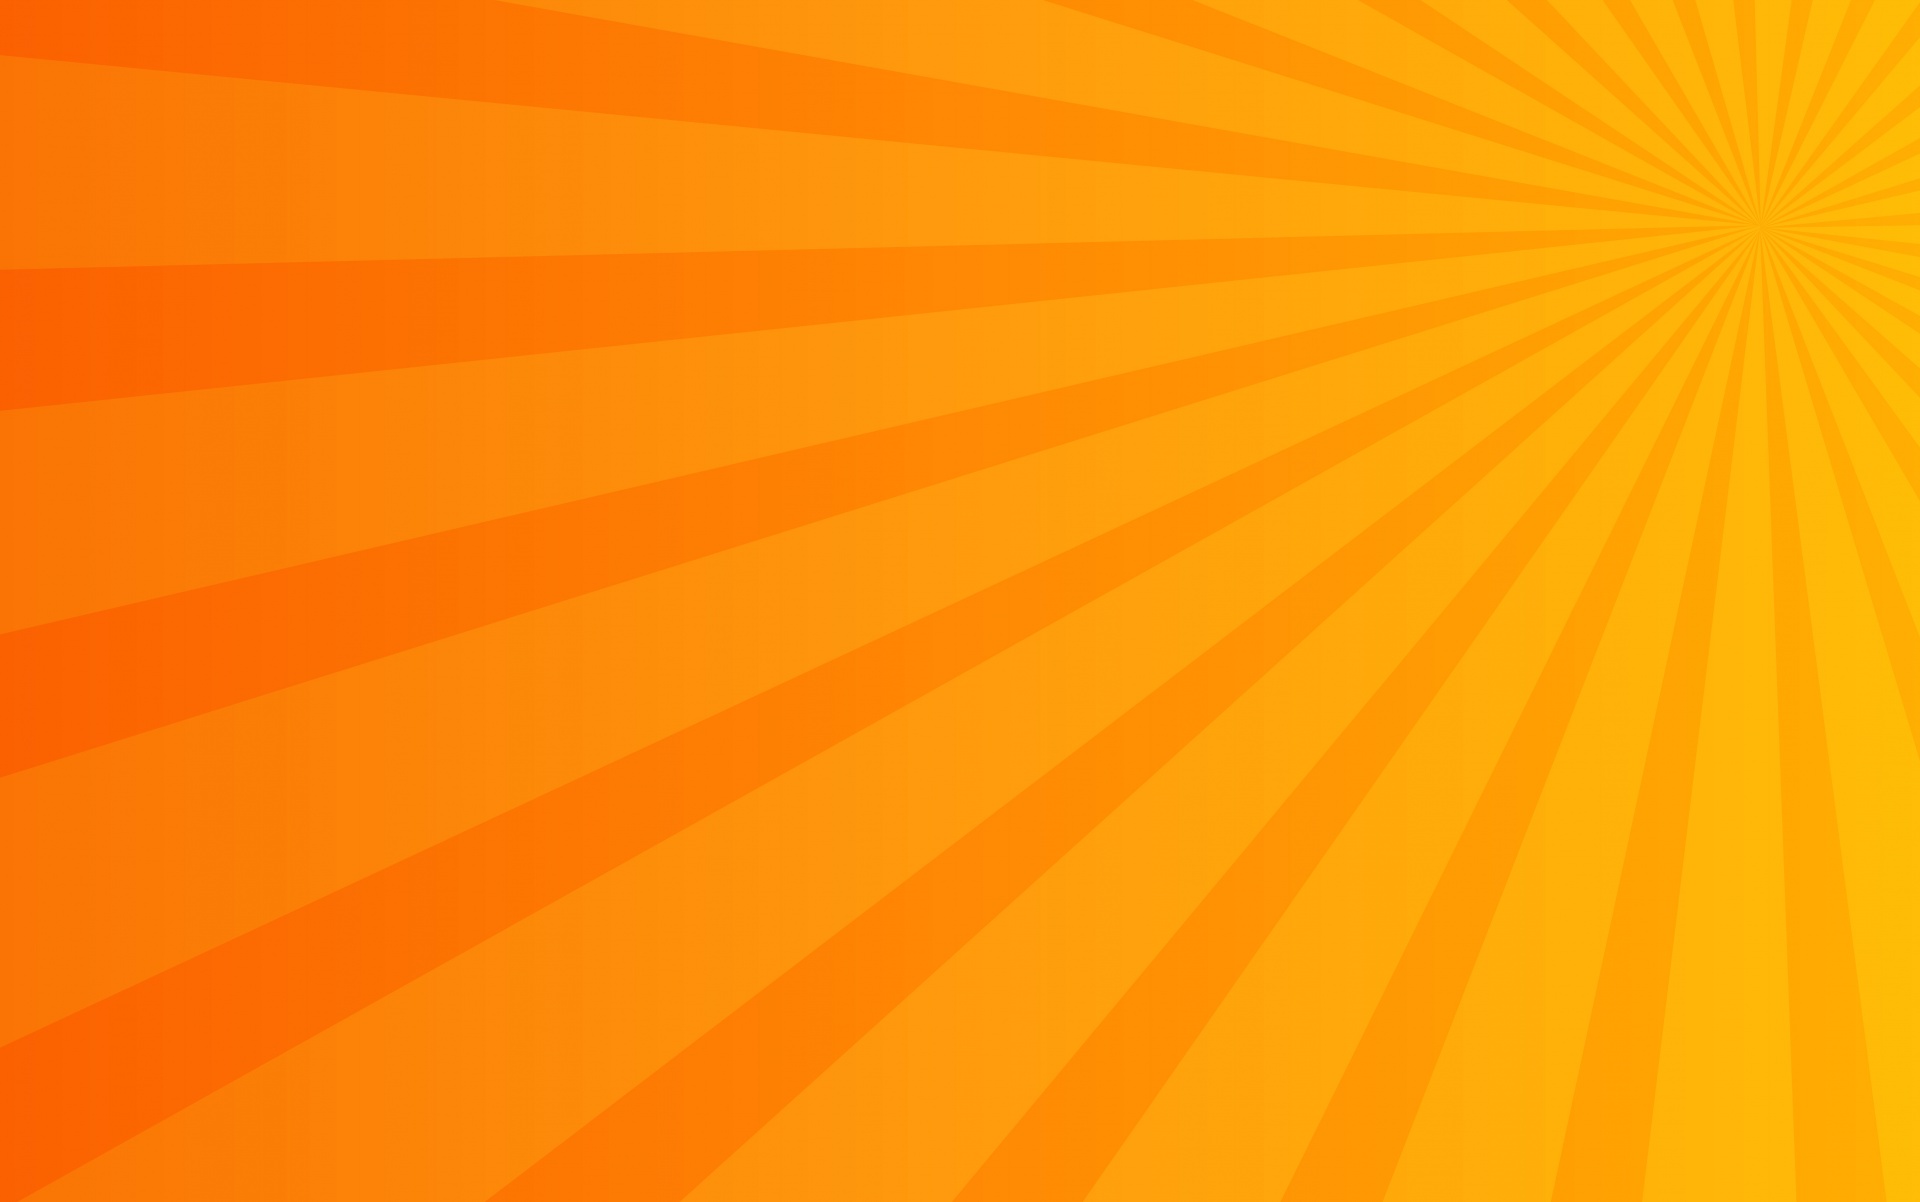 サンバースト 太陽光線オレンジ背景 無料画像 Public Domain Pictures